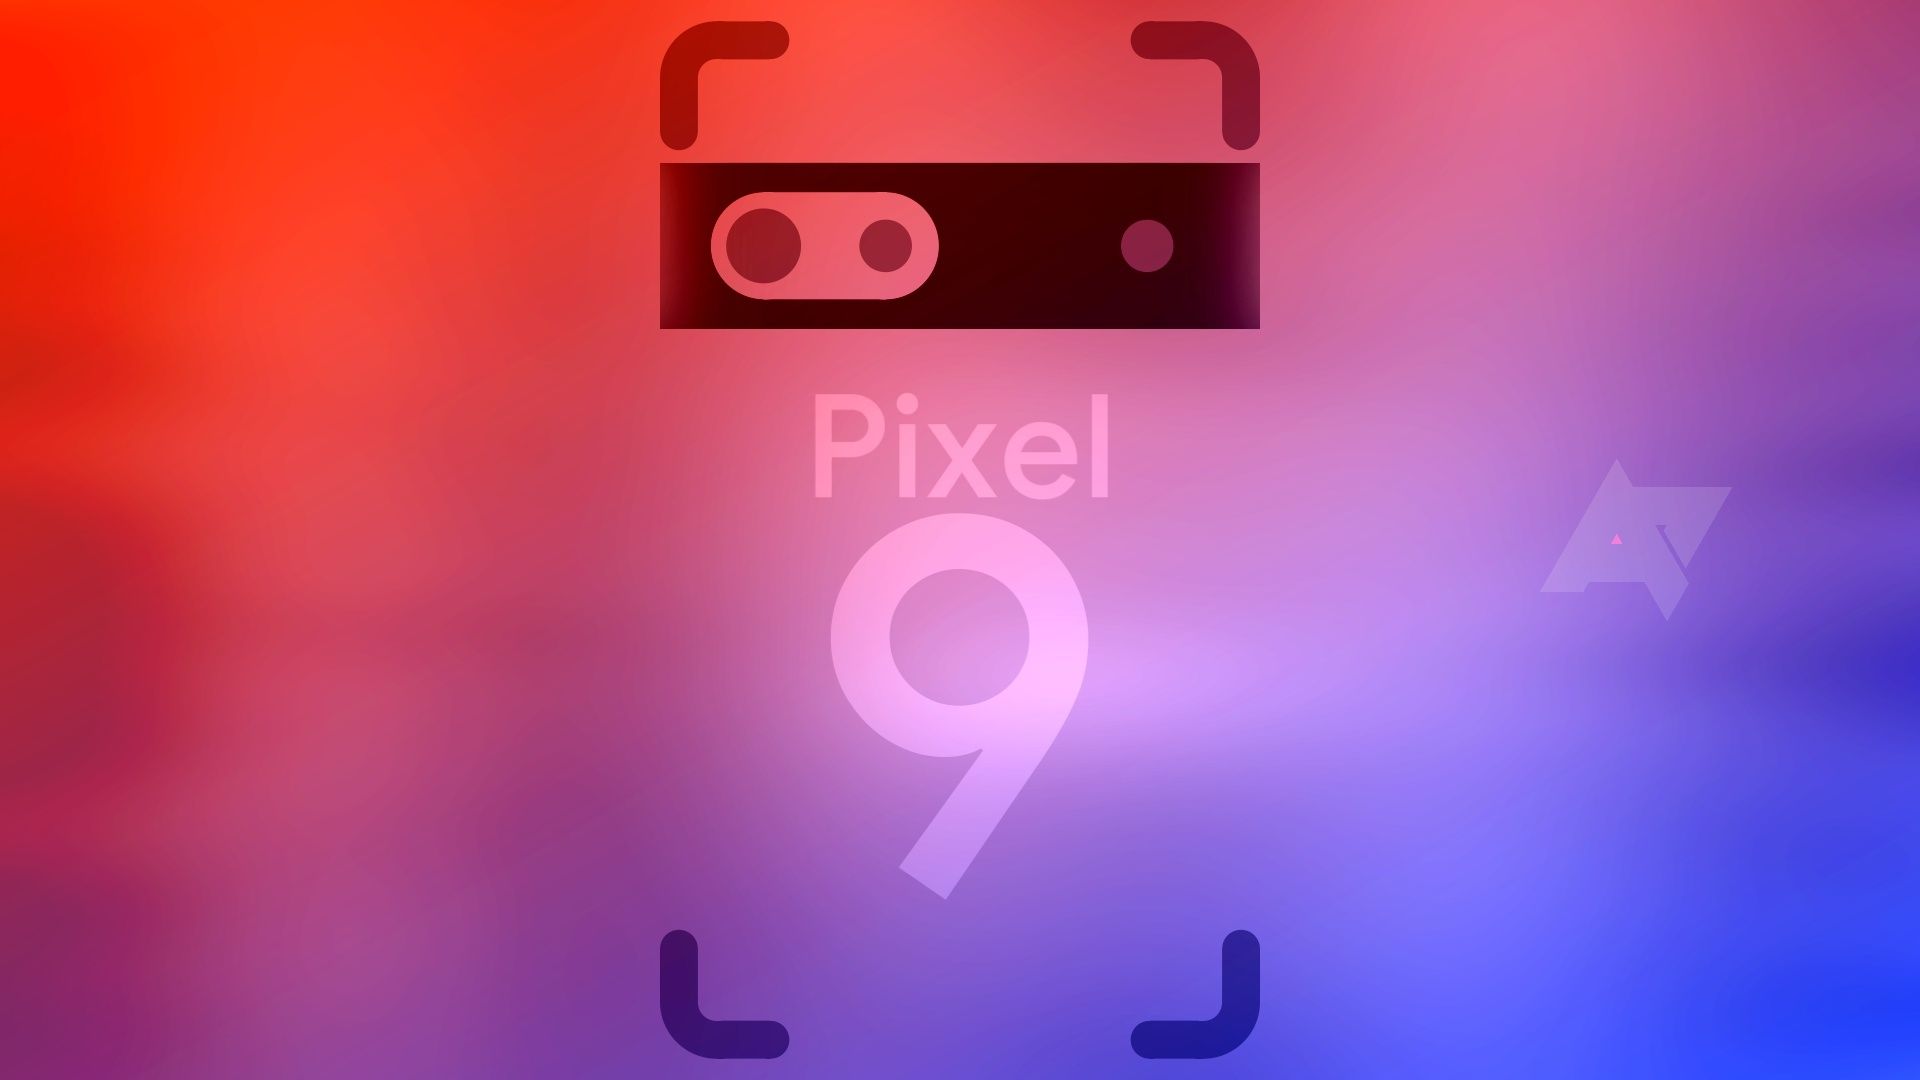 As palavras 'Pixel 9' dentro do contorno de um smartphone contra um fundo laranja e roxo